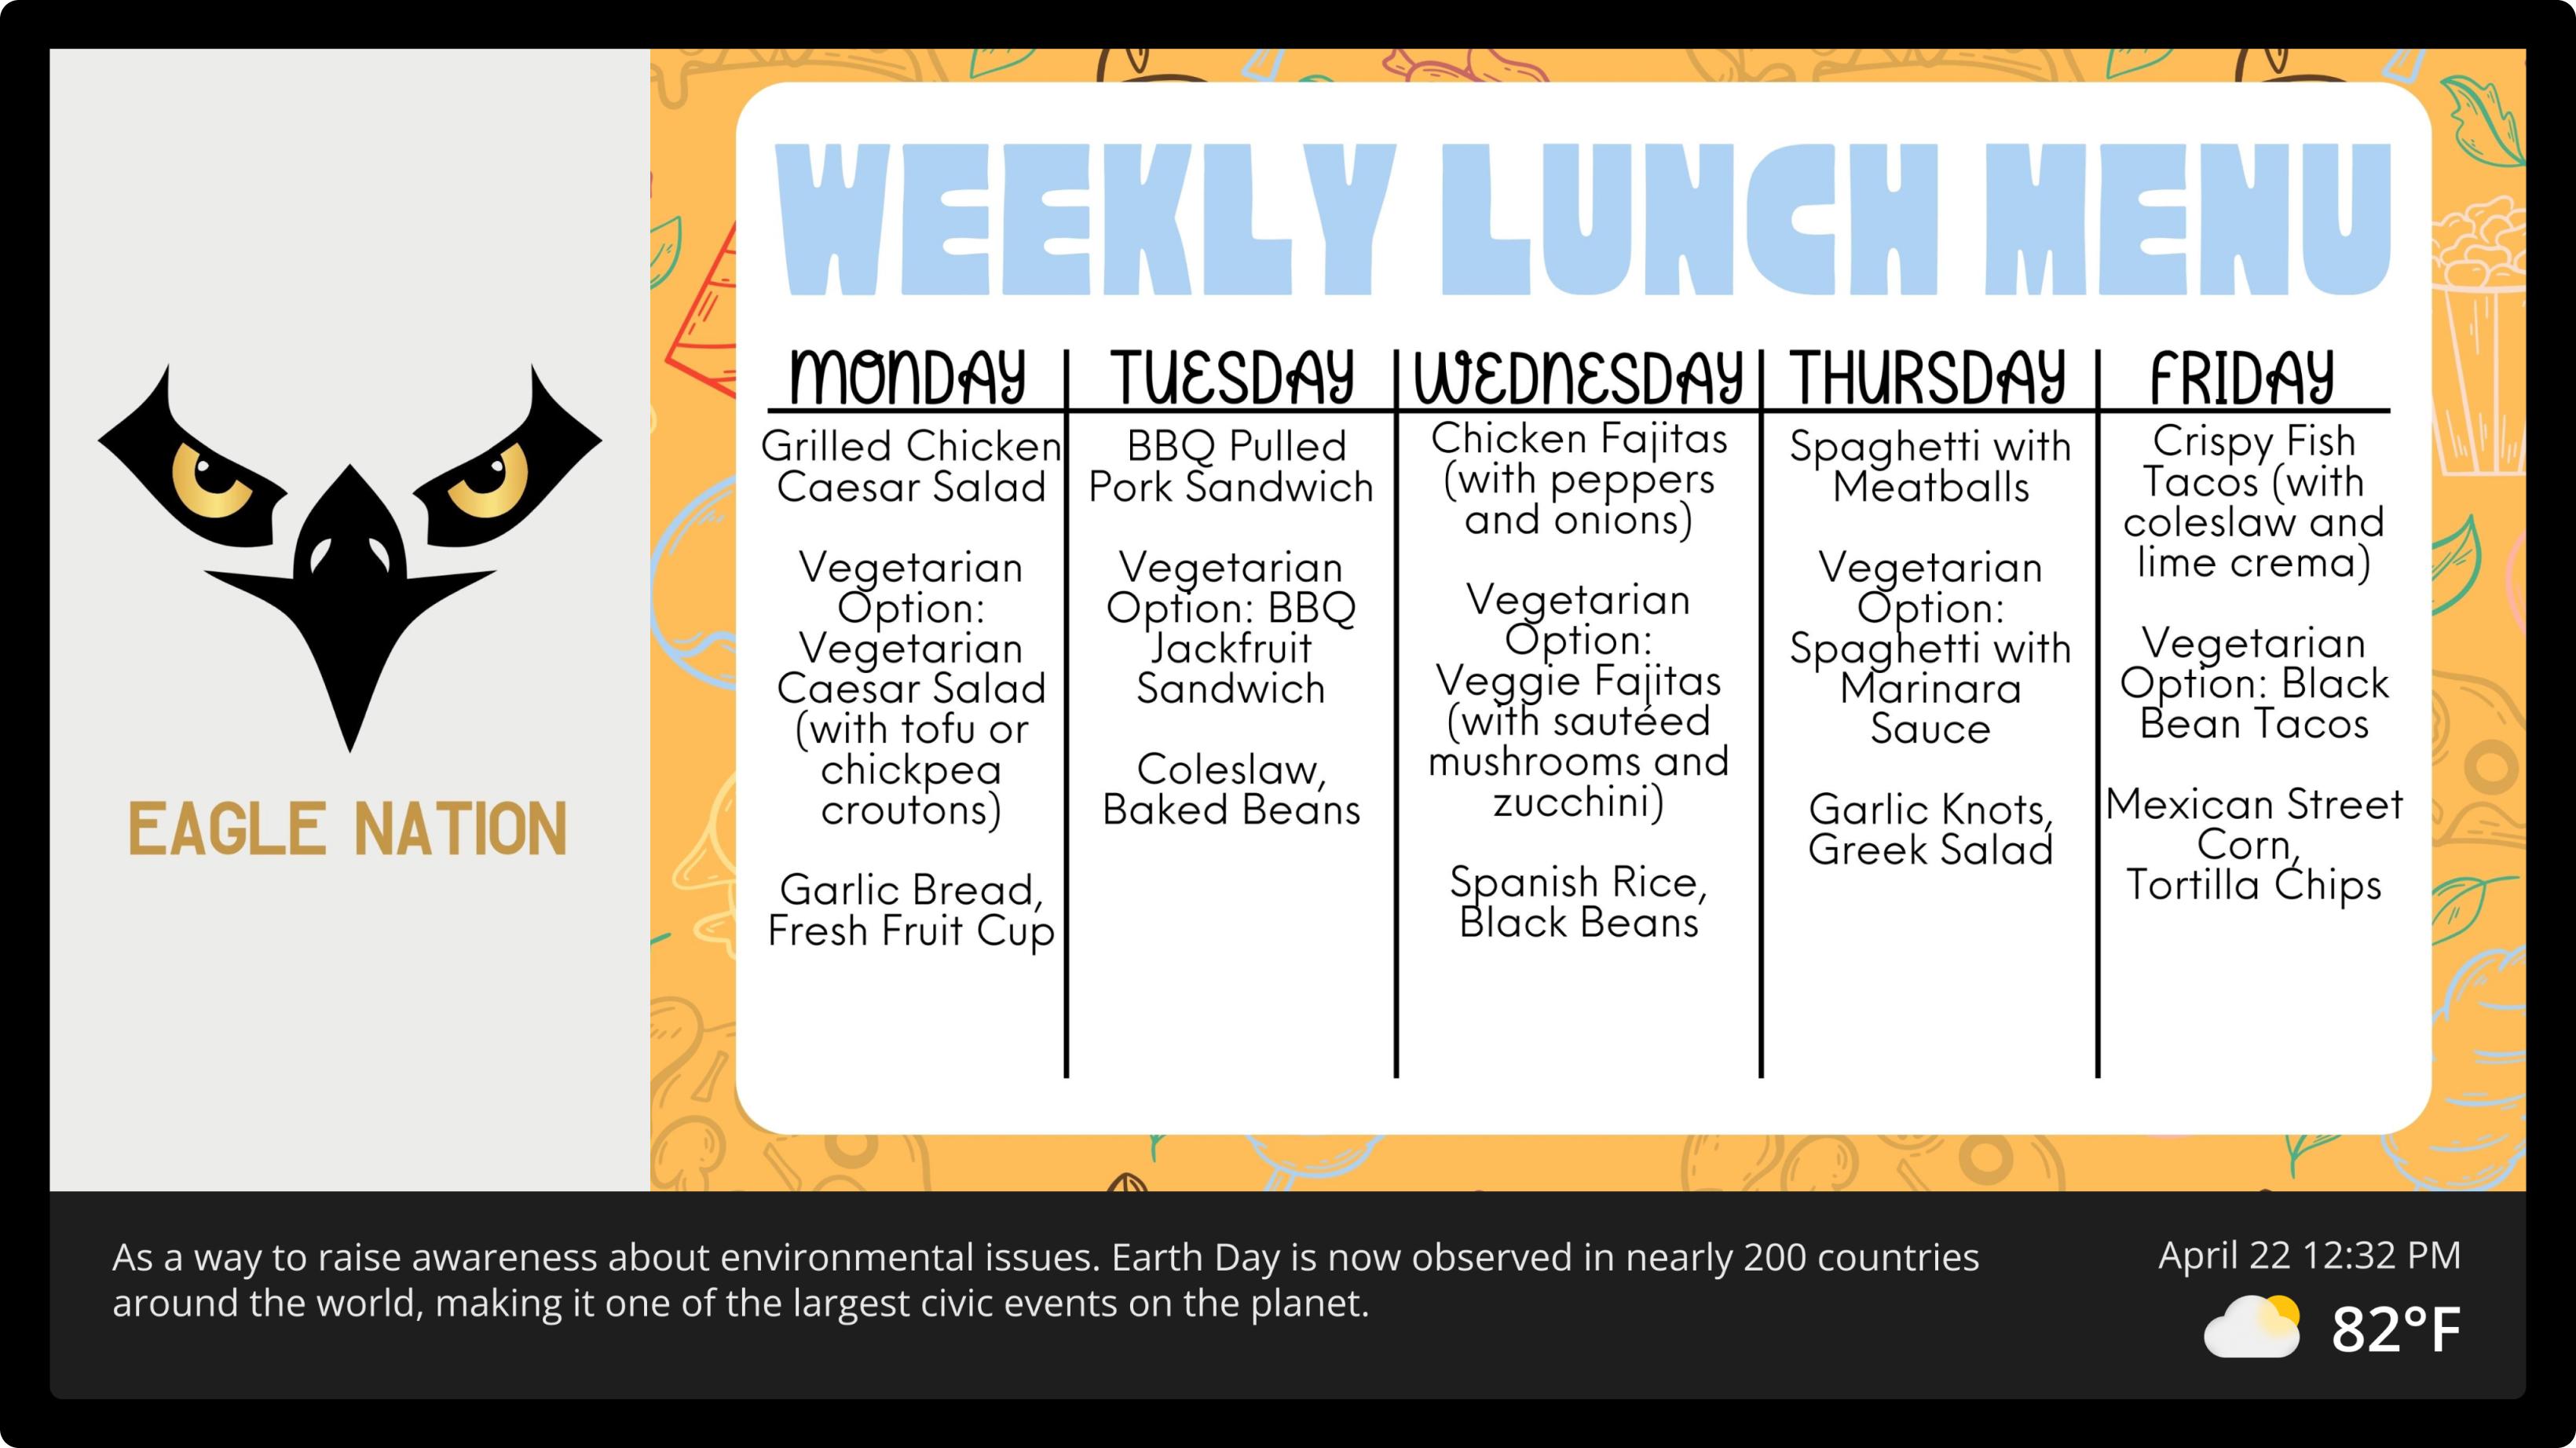 Screen example: Weekly lunch menu